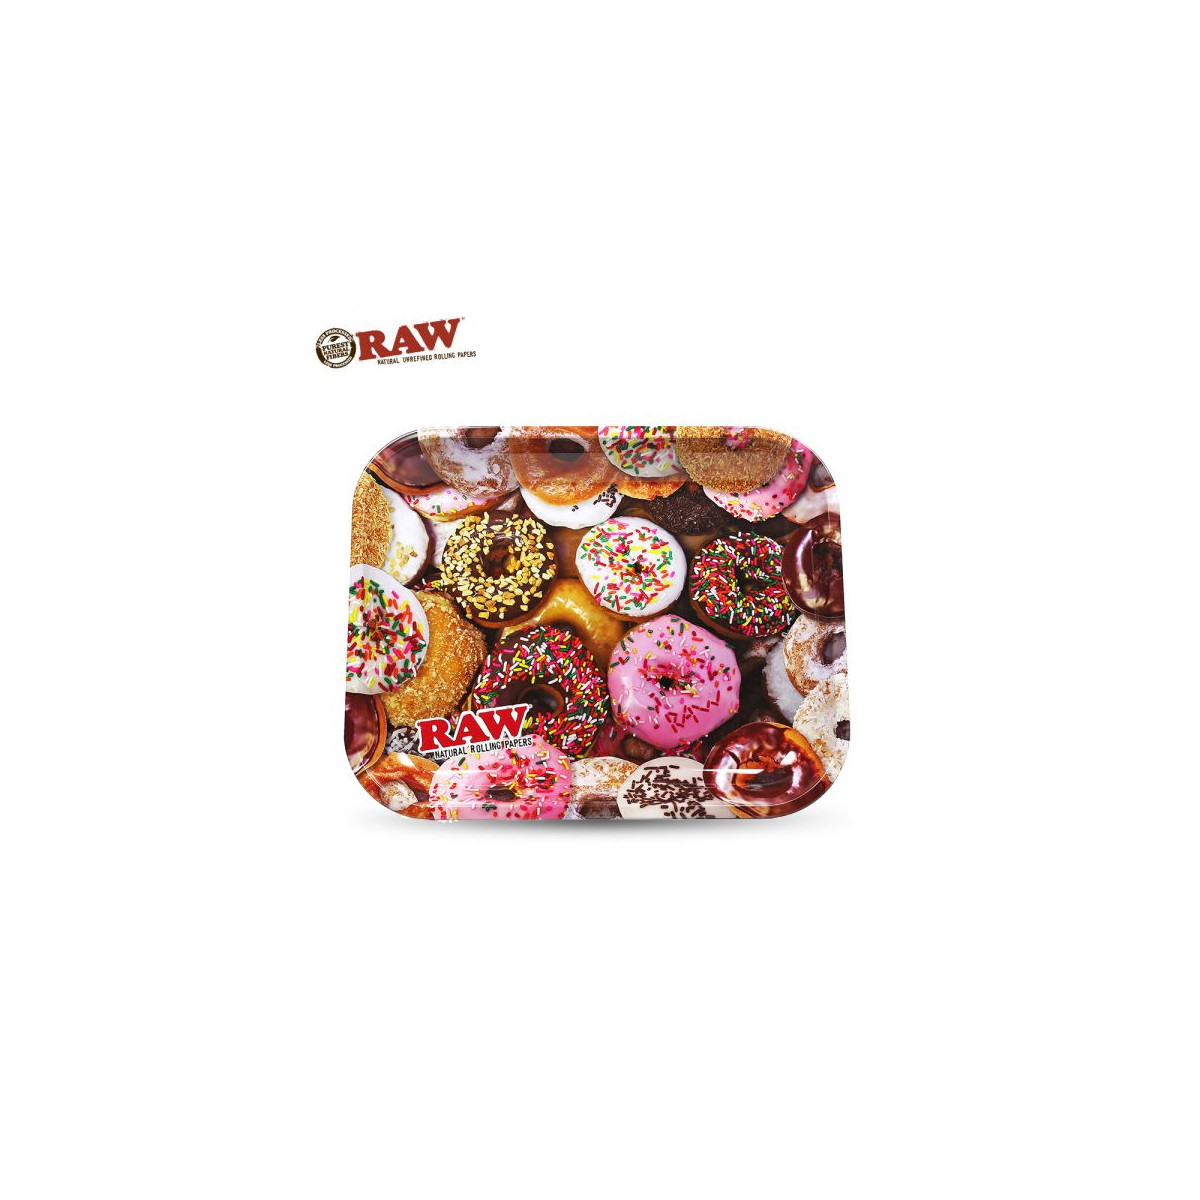 Mixerbakke Raw Donuts 27,5 x 33 cm